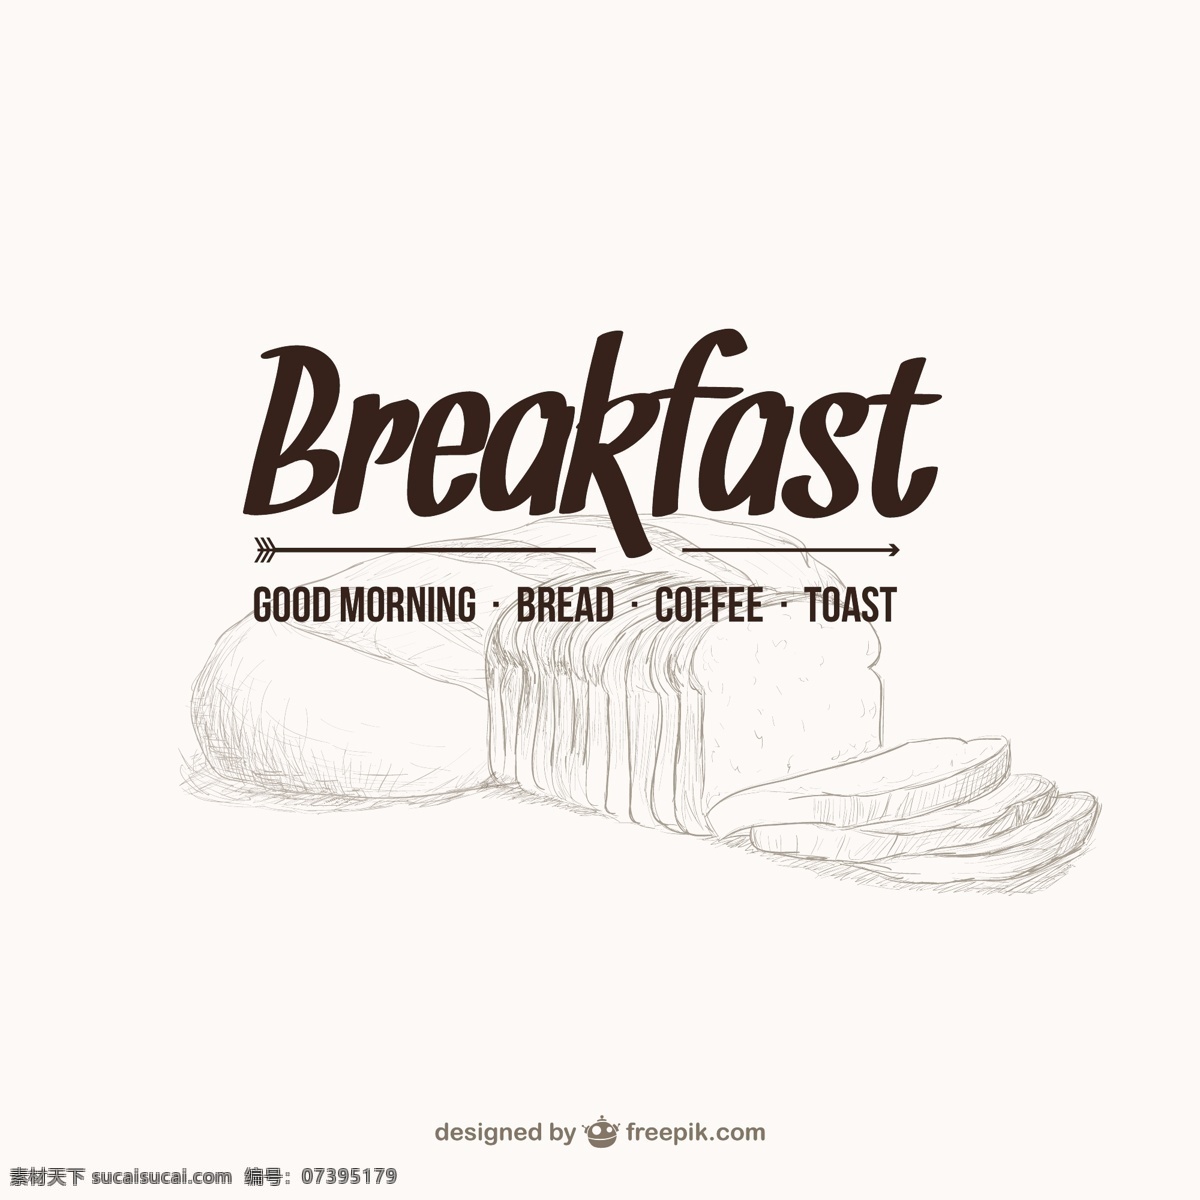 早餐菜单 食品 咖啡 面包 早餐 上午 早上